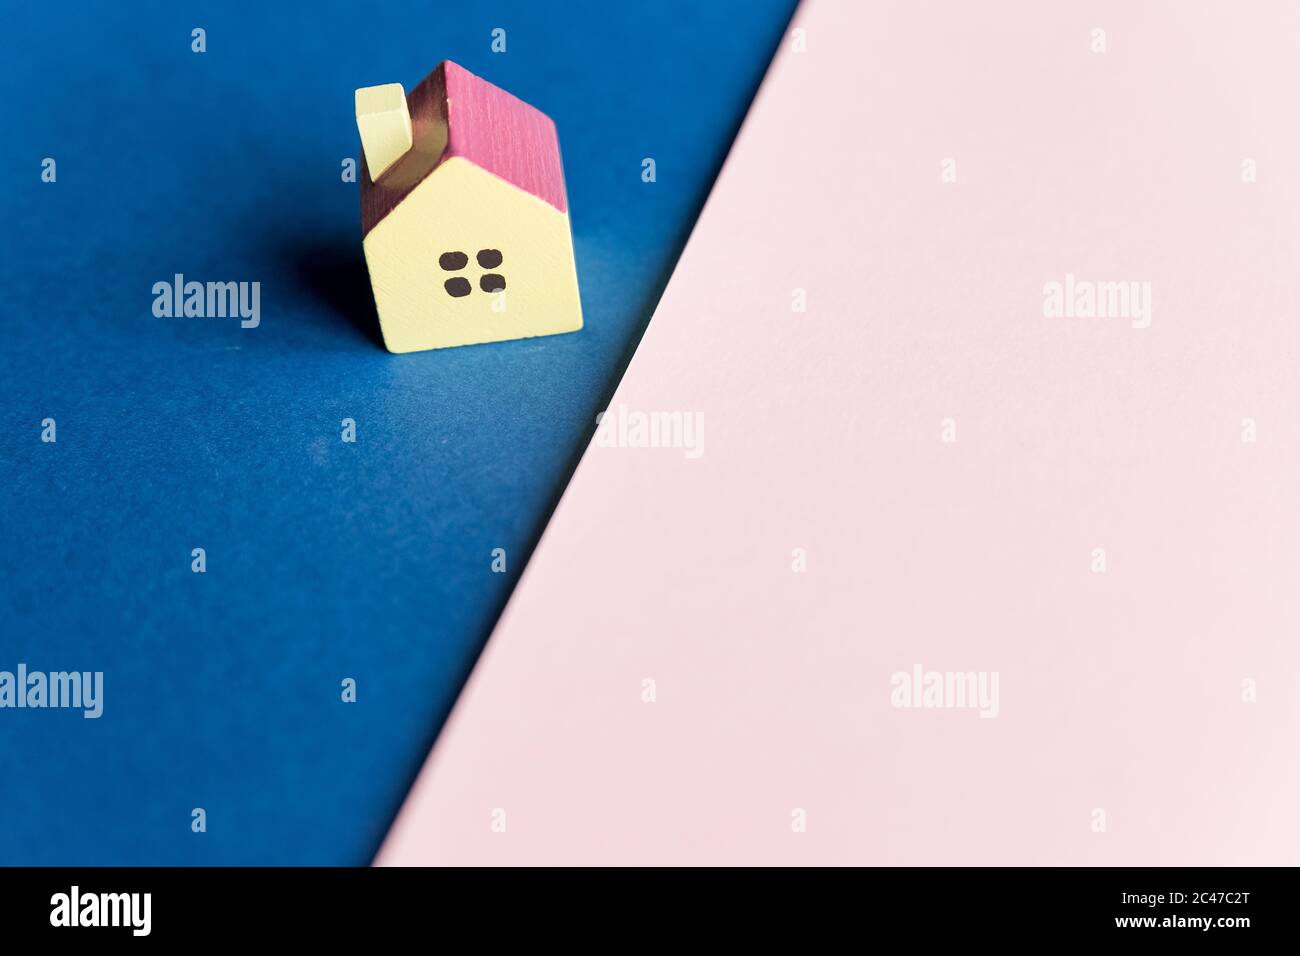 Inmobiliaria, casa modelo al aire libre, closeup.Casa modelo de madera sobre un fondo geométrico rosa y azul con copia space.Concept para la escalera de la propiedad Foto de stock